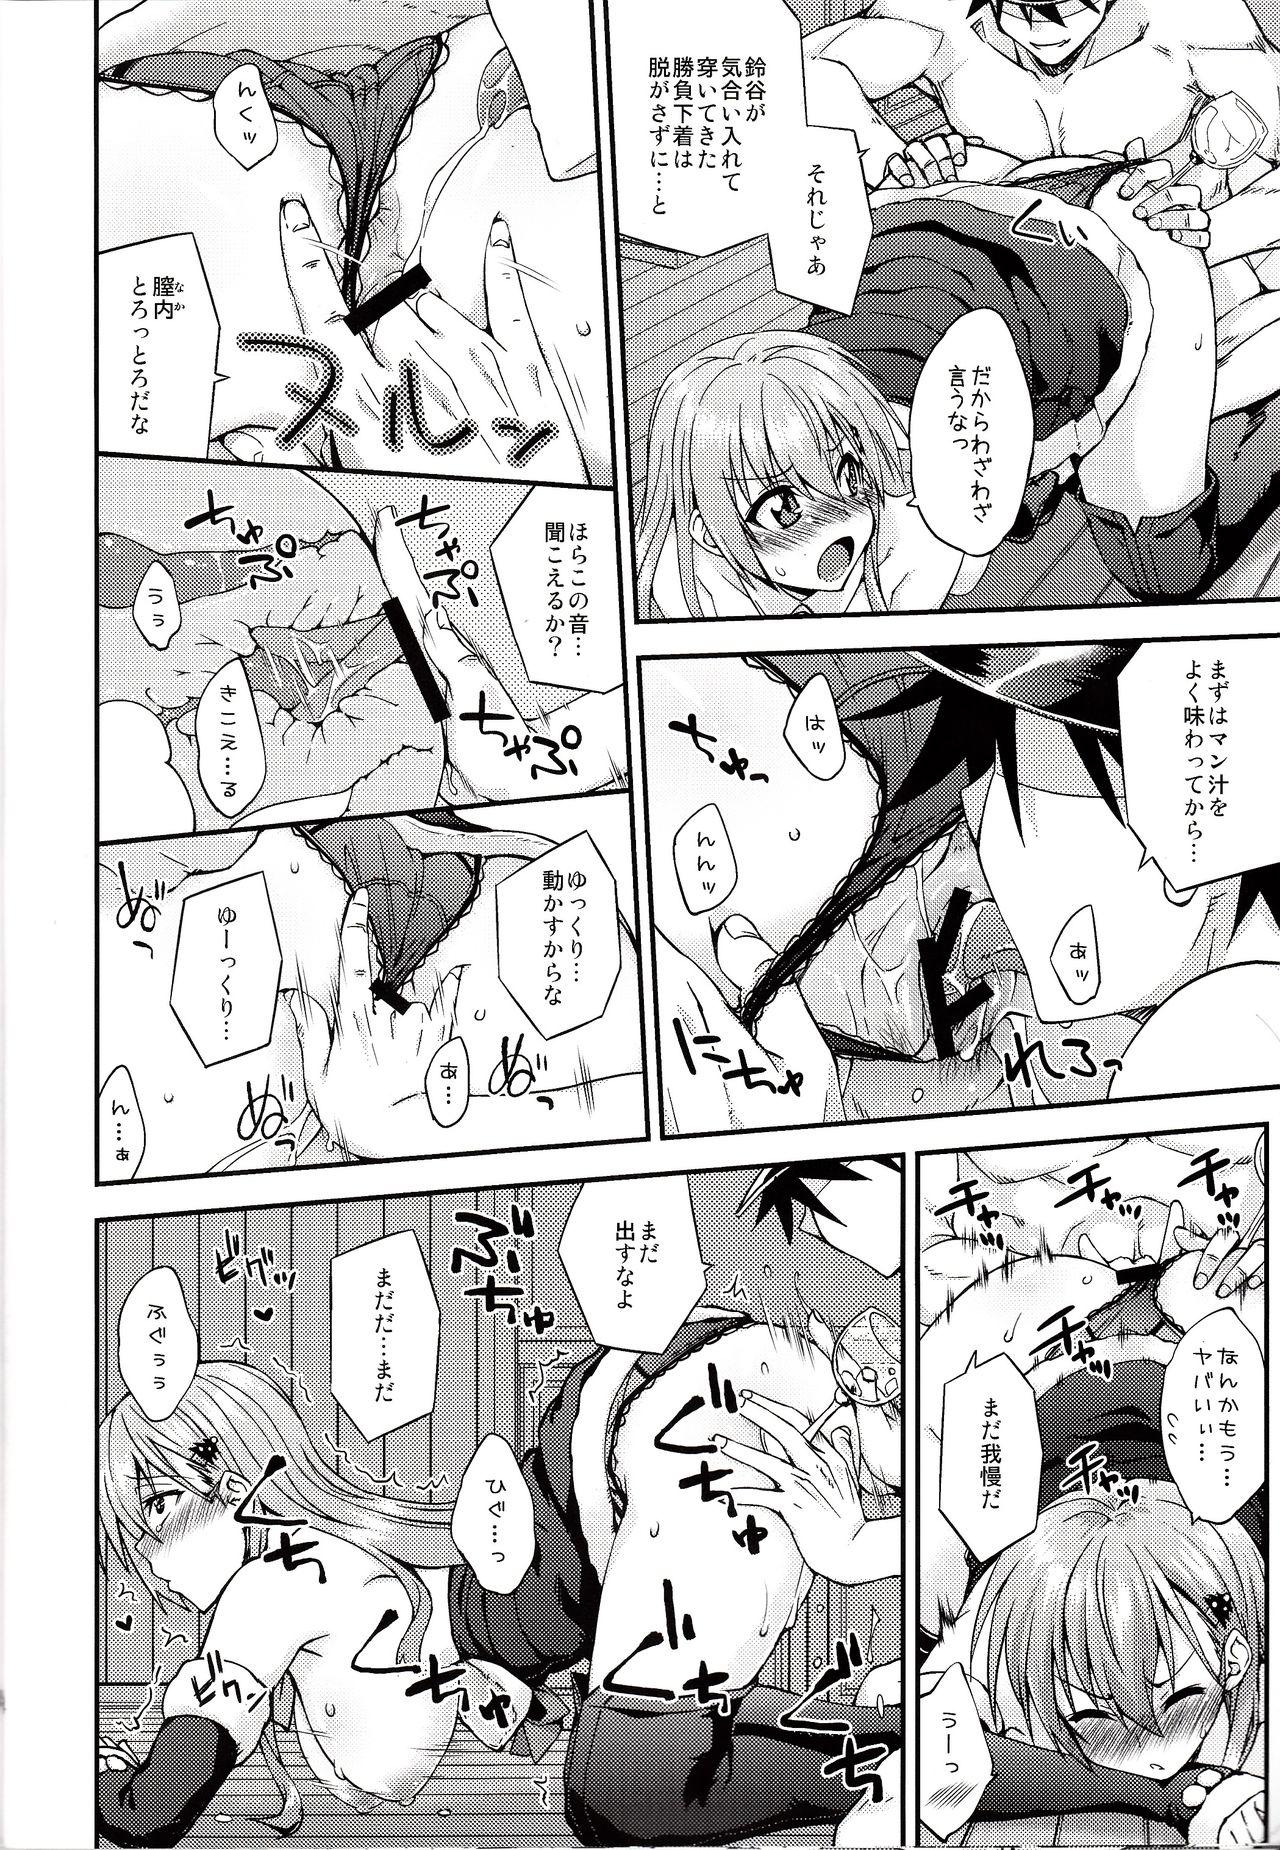 Gayfuck Suzuya to Dousuru? Nanishichau? 9 - Kantai collection 18yo - Page 13